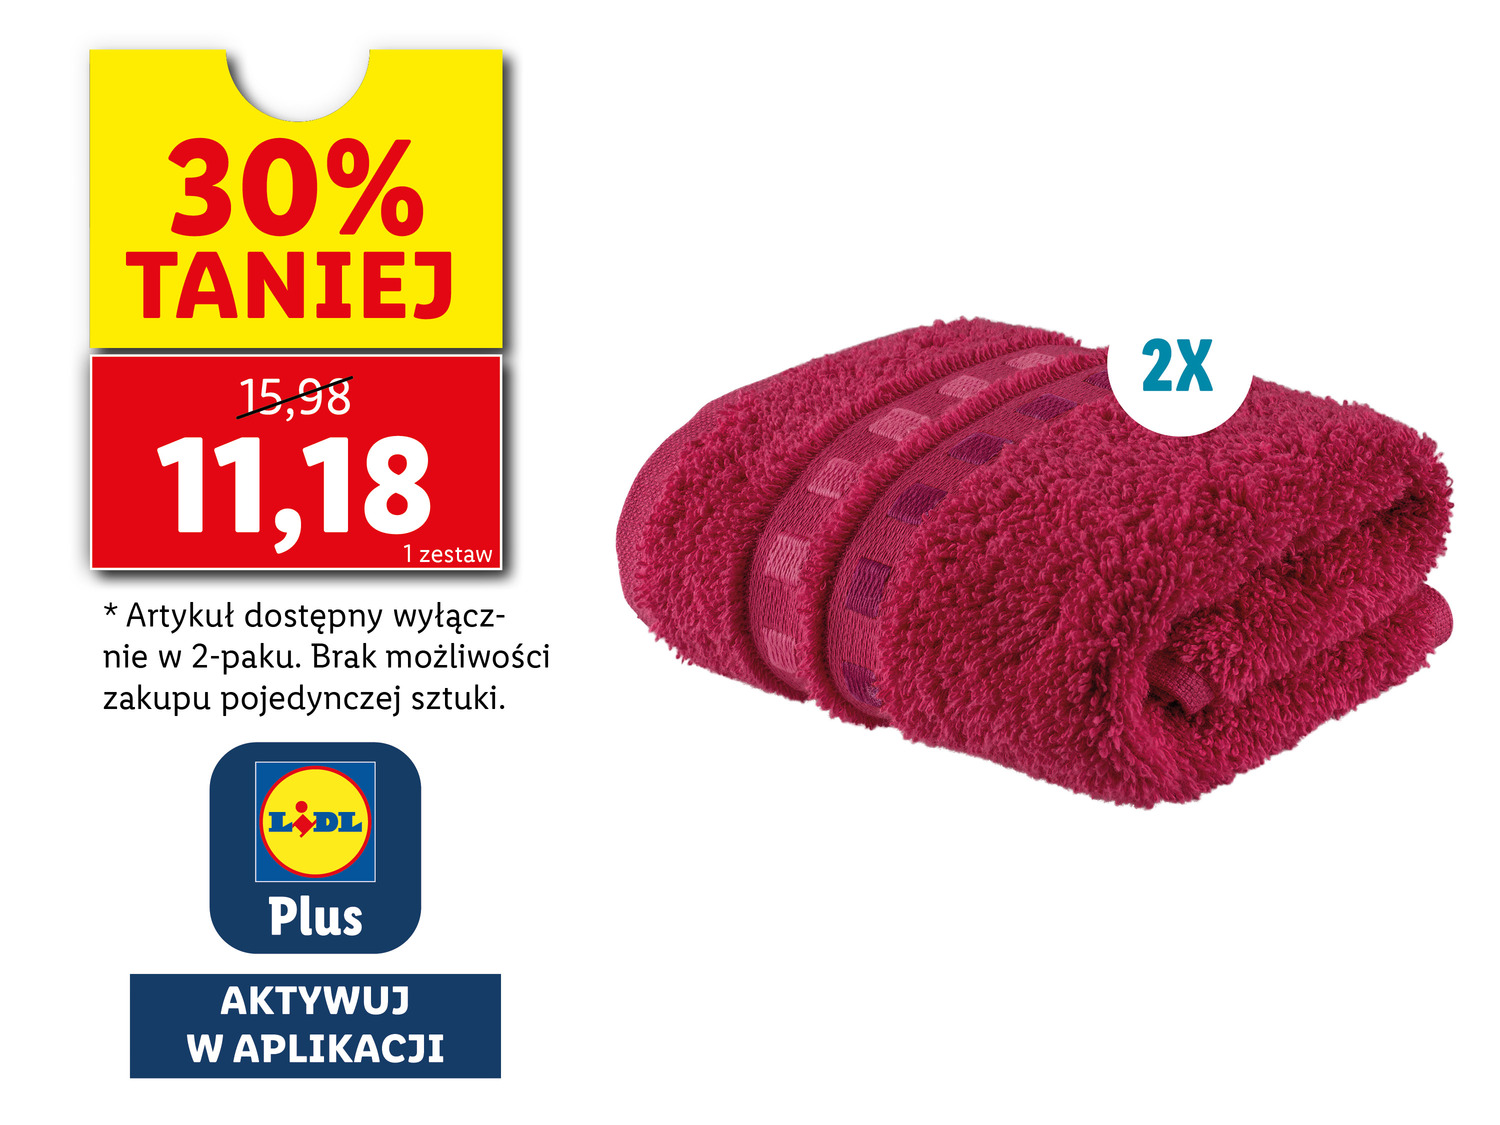 Ręczniki 30 x 50 cm, 2 szt.* , cena 15,98 PLN 
- 450 g/m2
- 100% bawełny
- ...